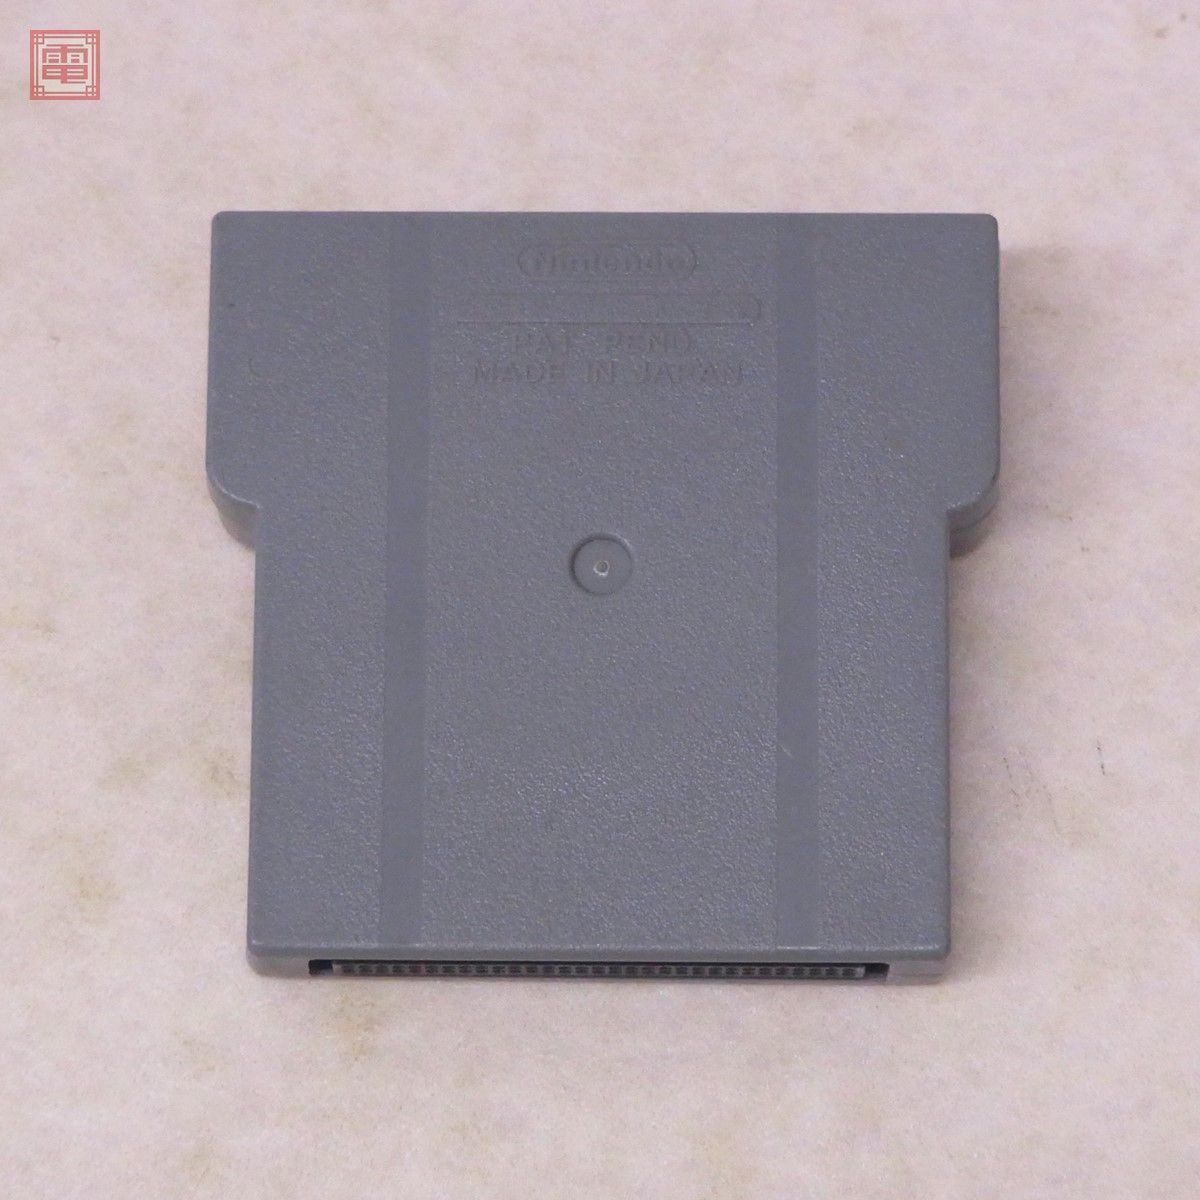  гарантия работы товар SFC Super Famicom sa tera вид 8M память упаковка спутниковый данные радиовещание для BSMC-HM-JPN Nintendo nintendo Nintendo[10